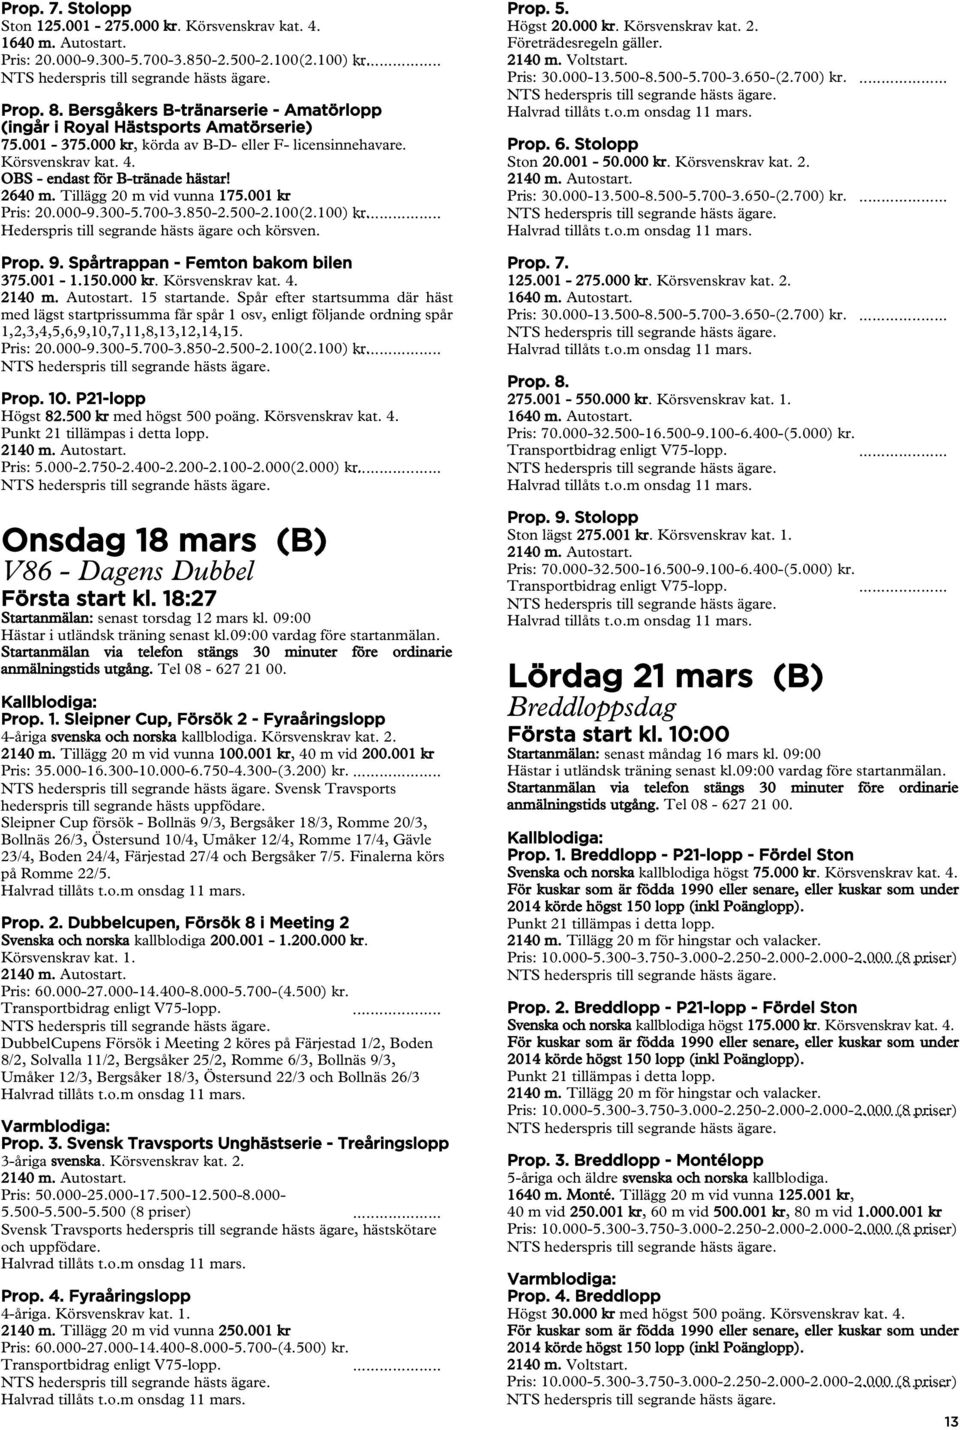 Spår efter startsumma där häst Prop. 10. P21-lopp Högst 82.500 kr med högst 500 poäng. Pris: 5.000-2.750-2.400-2.200-2.100-2.000(2.000)... Onsdag 18 mars (B) V86 - Dagens Dubbel Första start kl.